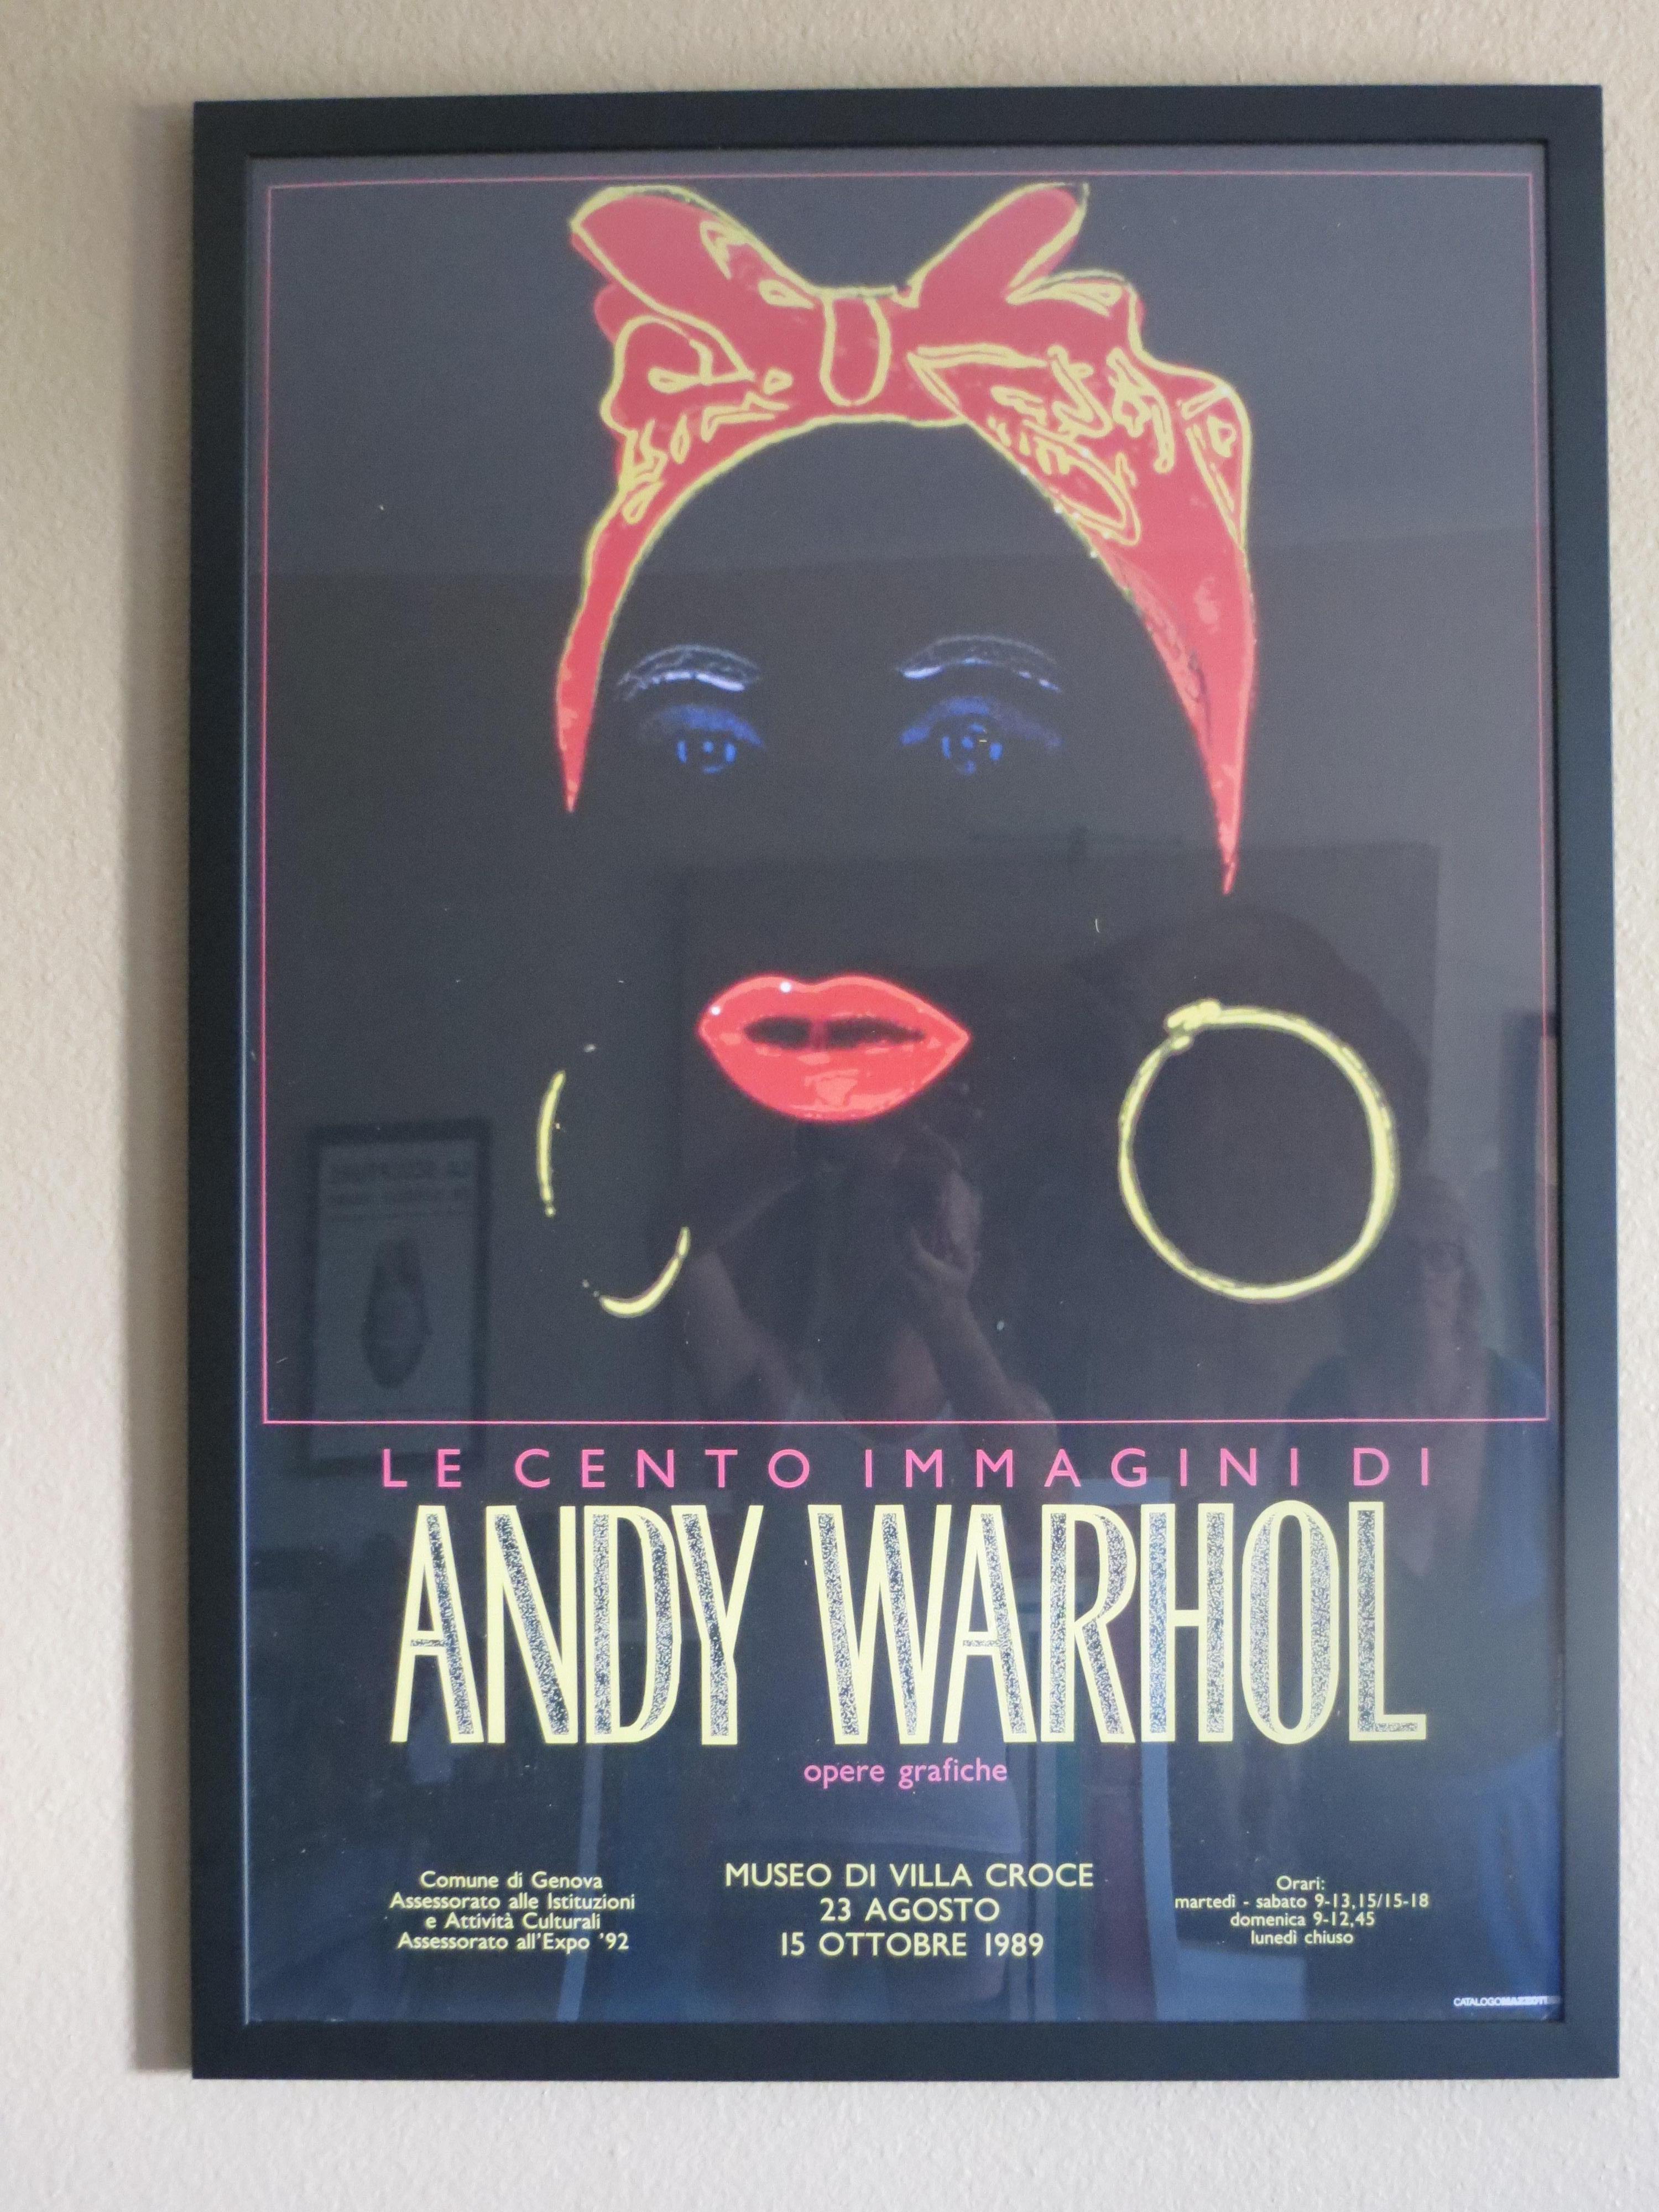 Andy Warhol Ausstellungsplakat,  Le Cento Imagini Di Andy Warhol.
Herausgegeben vom Museum der Villa Croce im Jahr 1989
Ausgezeichneter Zustand
Größe ist gerahmt 

Andy Warhol (1928-1987) wurde zu einem der führenden Künstler der Pop-Art-Bewegung